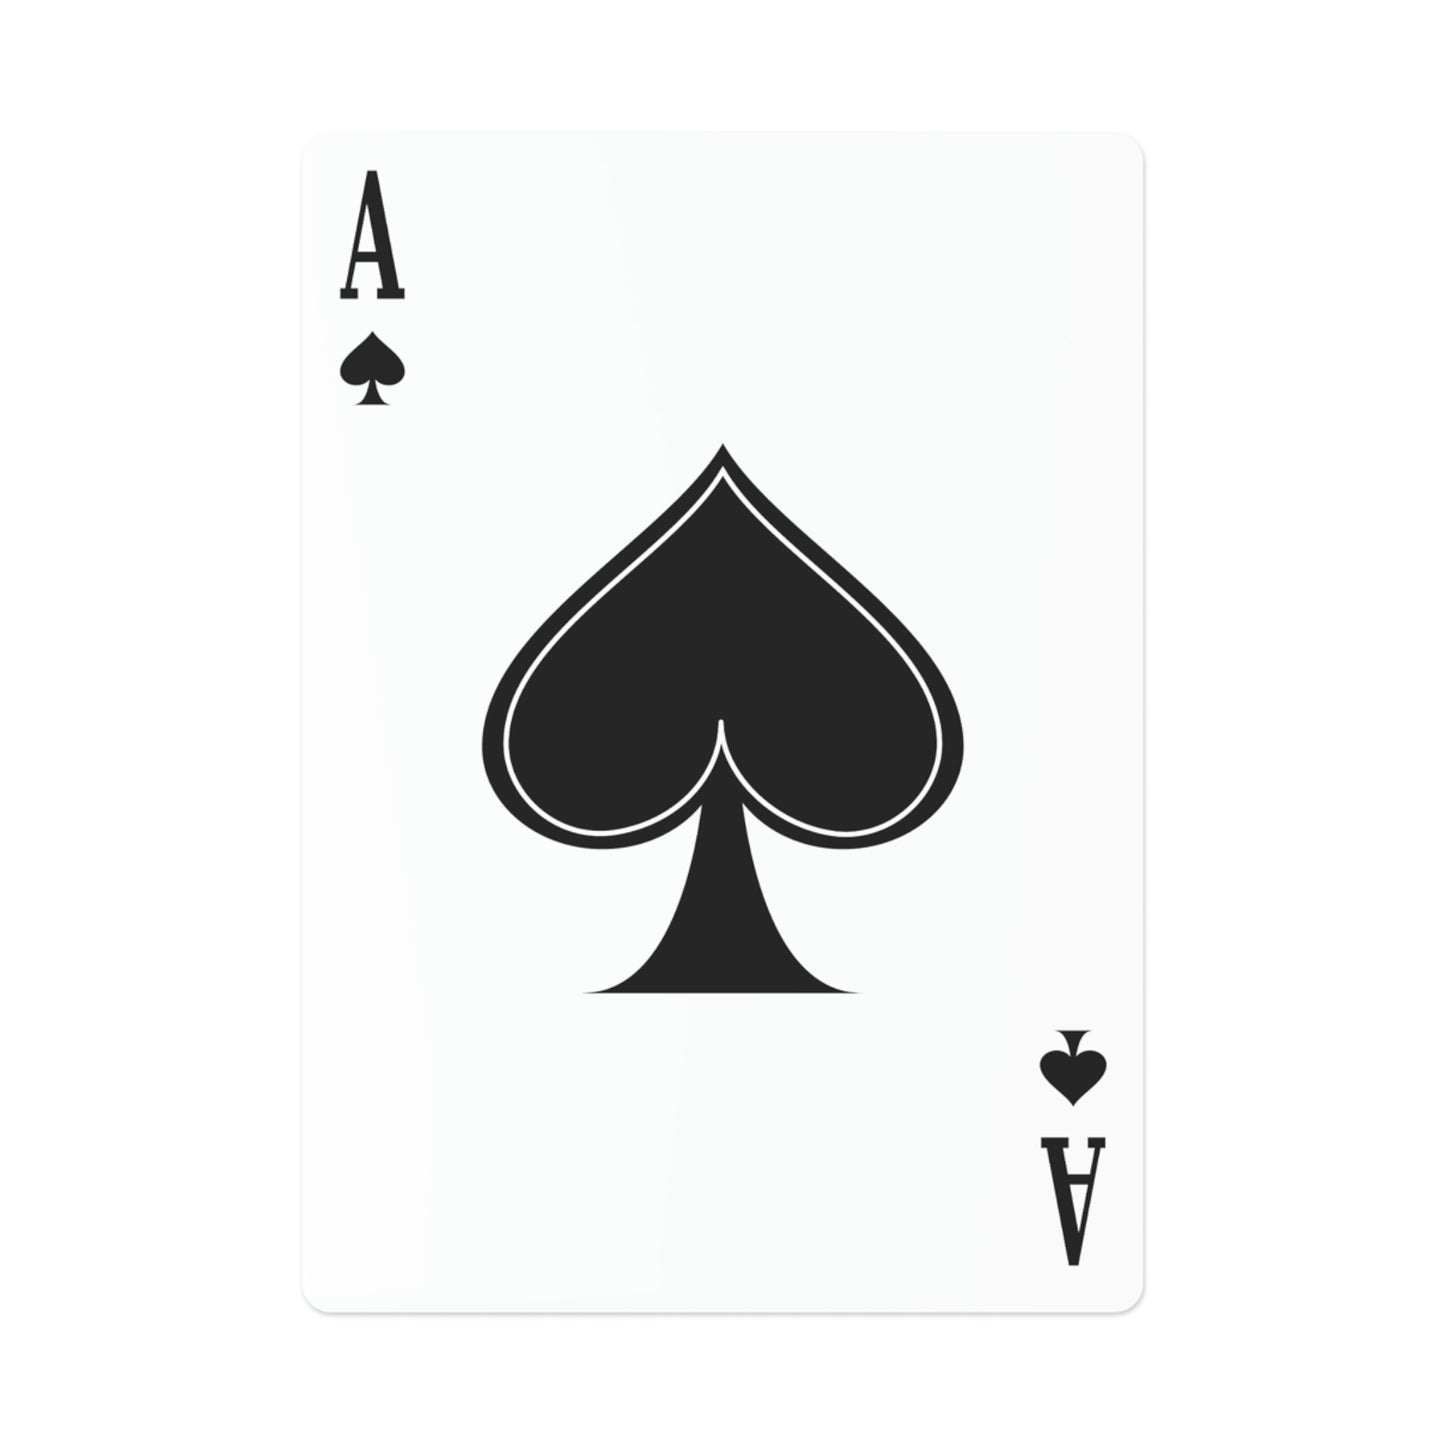 Skylit Poker Cards